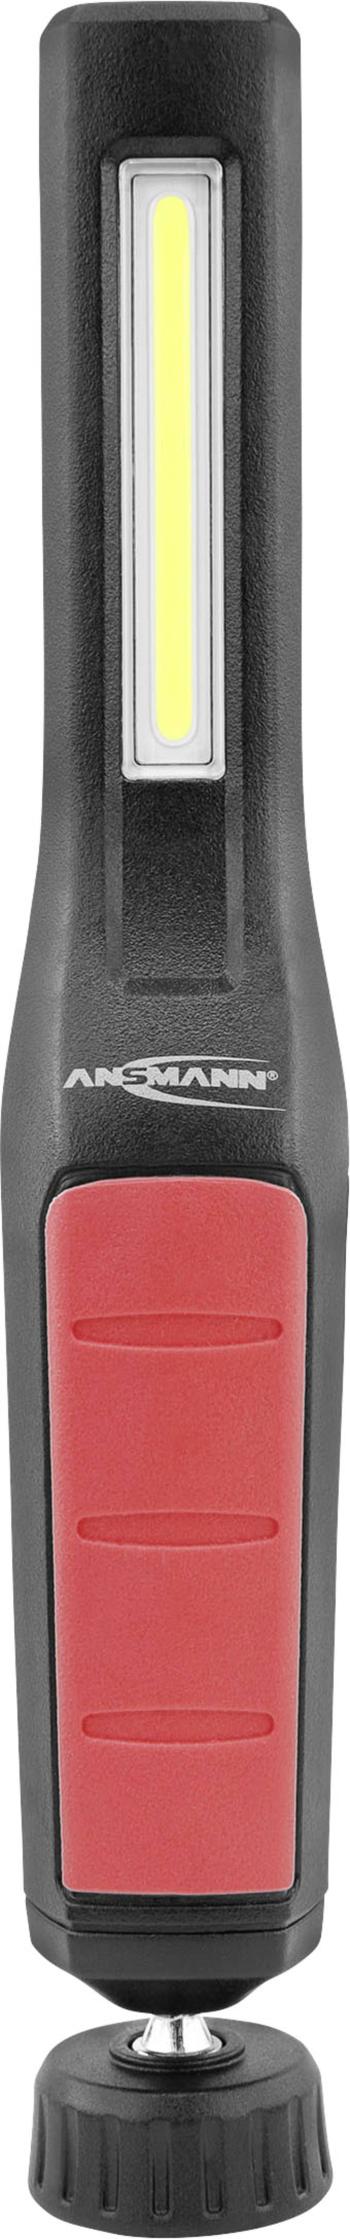 Ansmann 990-00110 Profi 230 mini svietidlo, penlight napájanie z akumulátora LED  27.5 mm čierna/červená